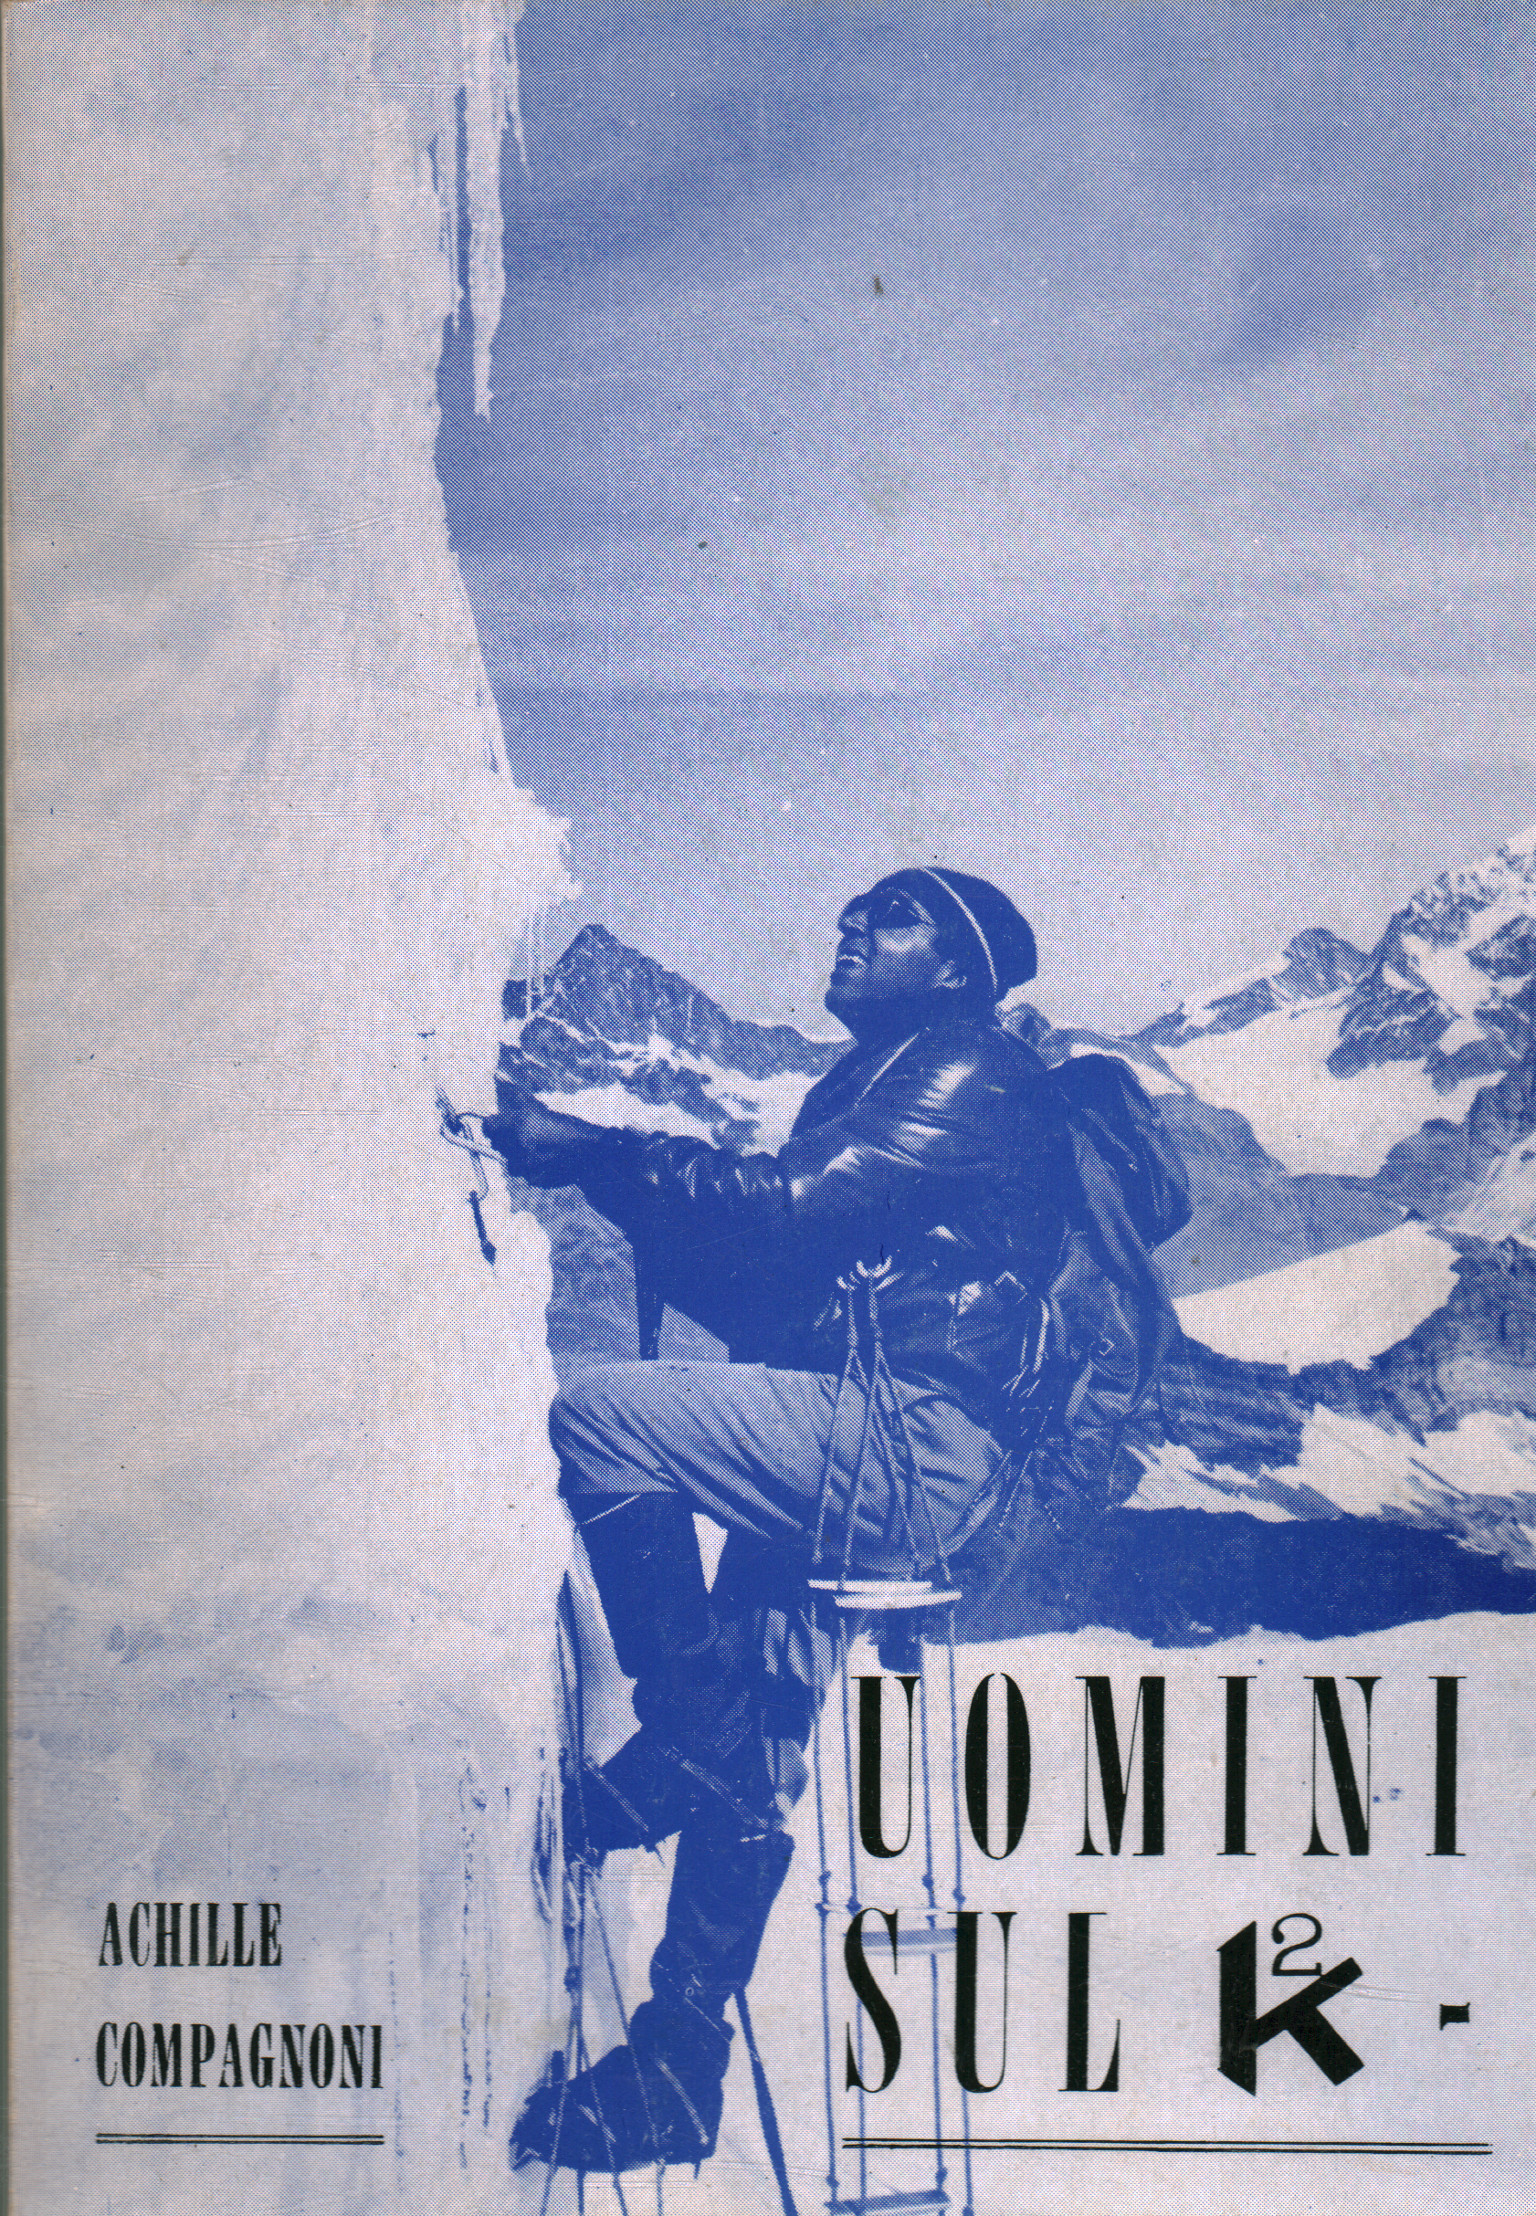 Men on K2, Achille Compagnoni